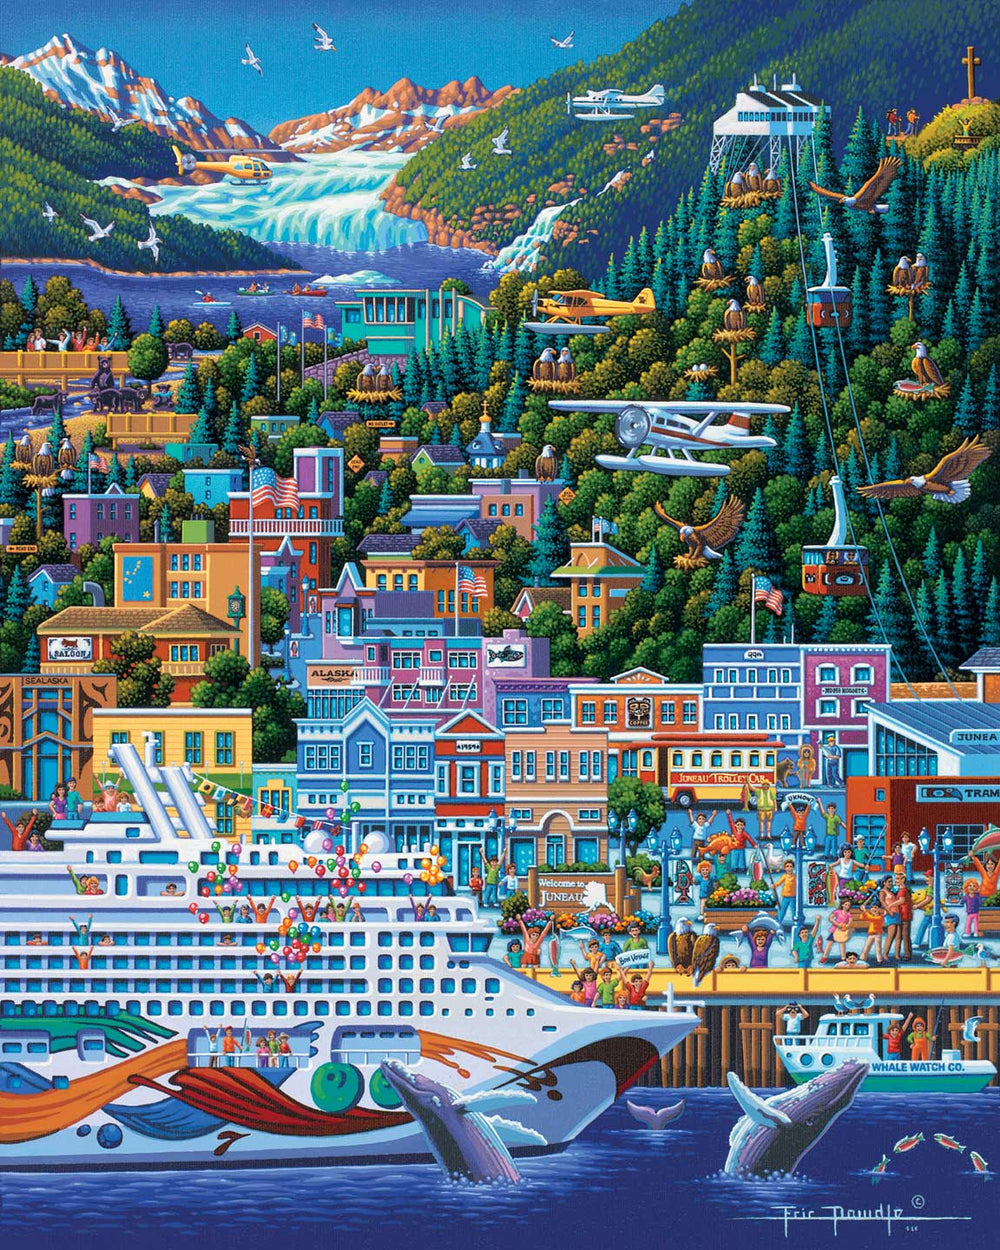 Juneau - Personal Puzzle - 210 Piece